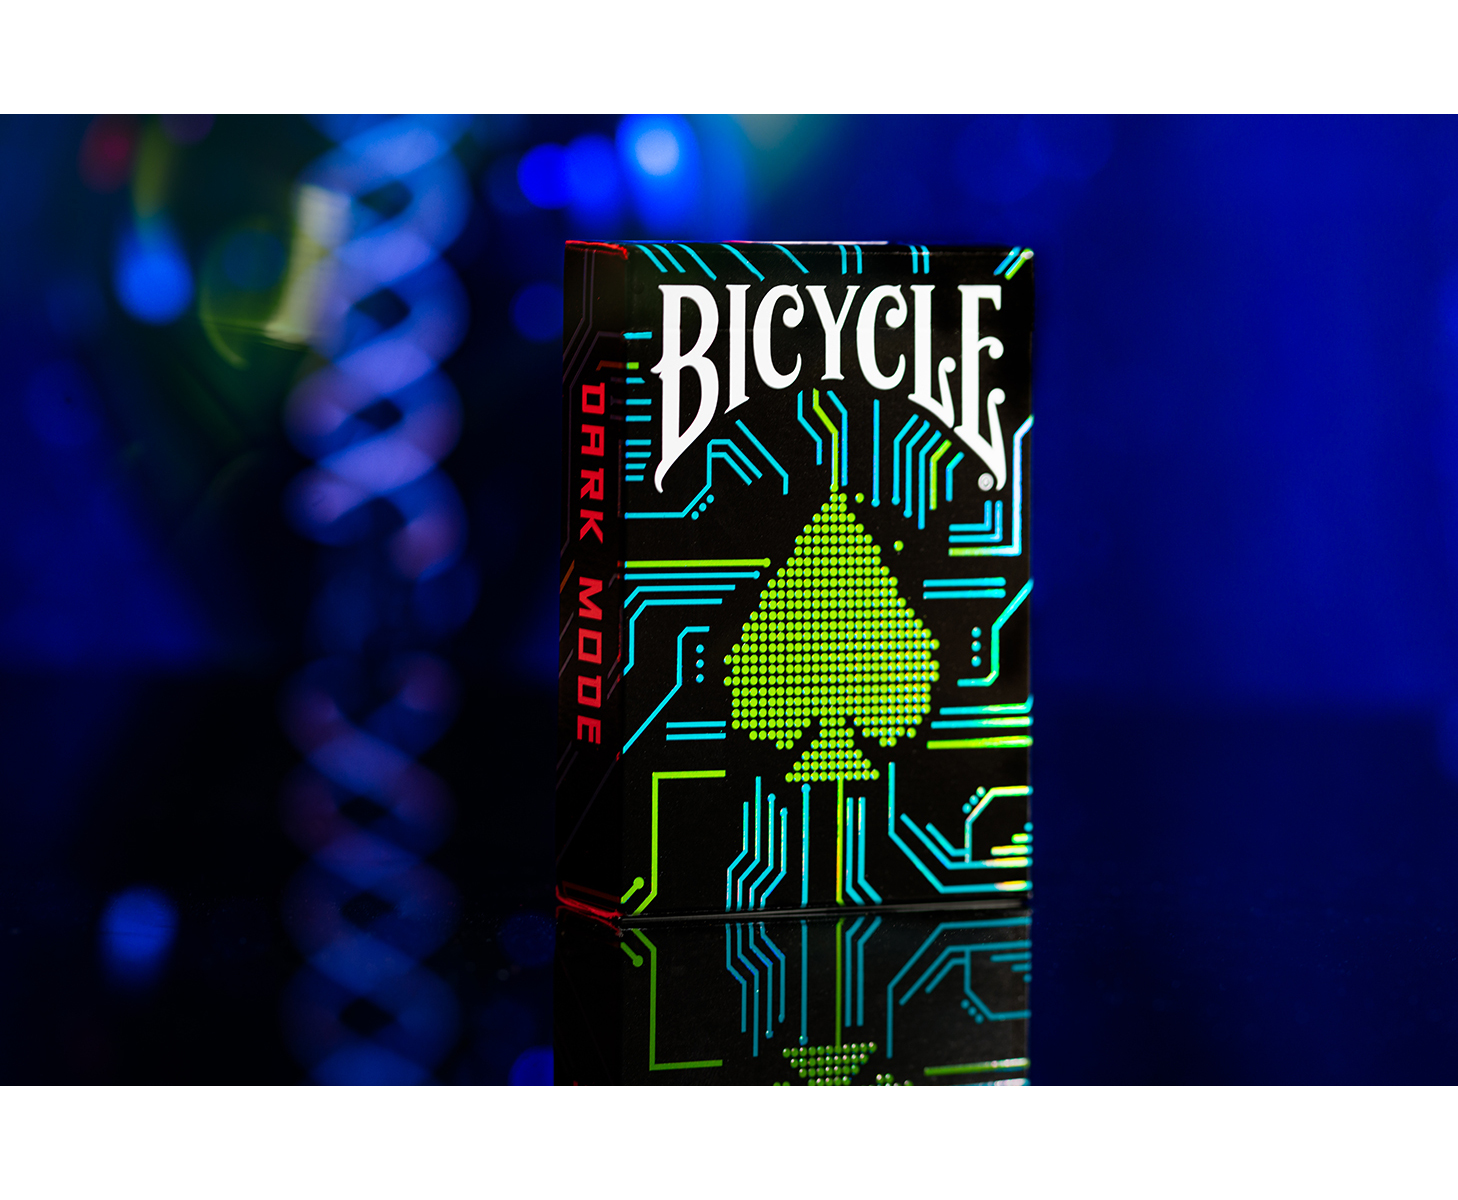 ASS ALTENBURGER - Kartendeck Mode Spielkarten Bicycle Dark